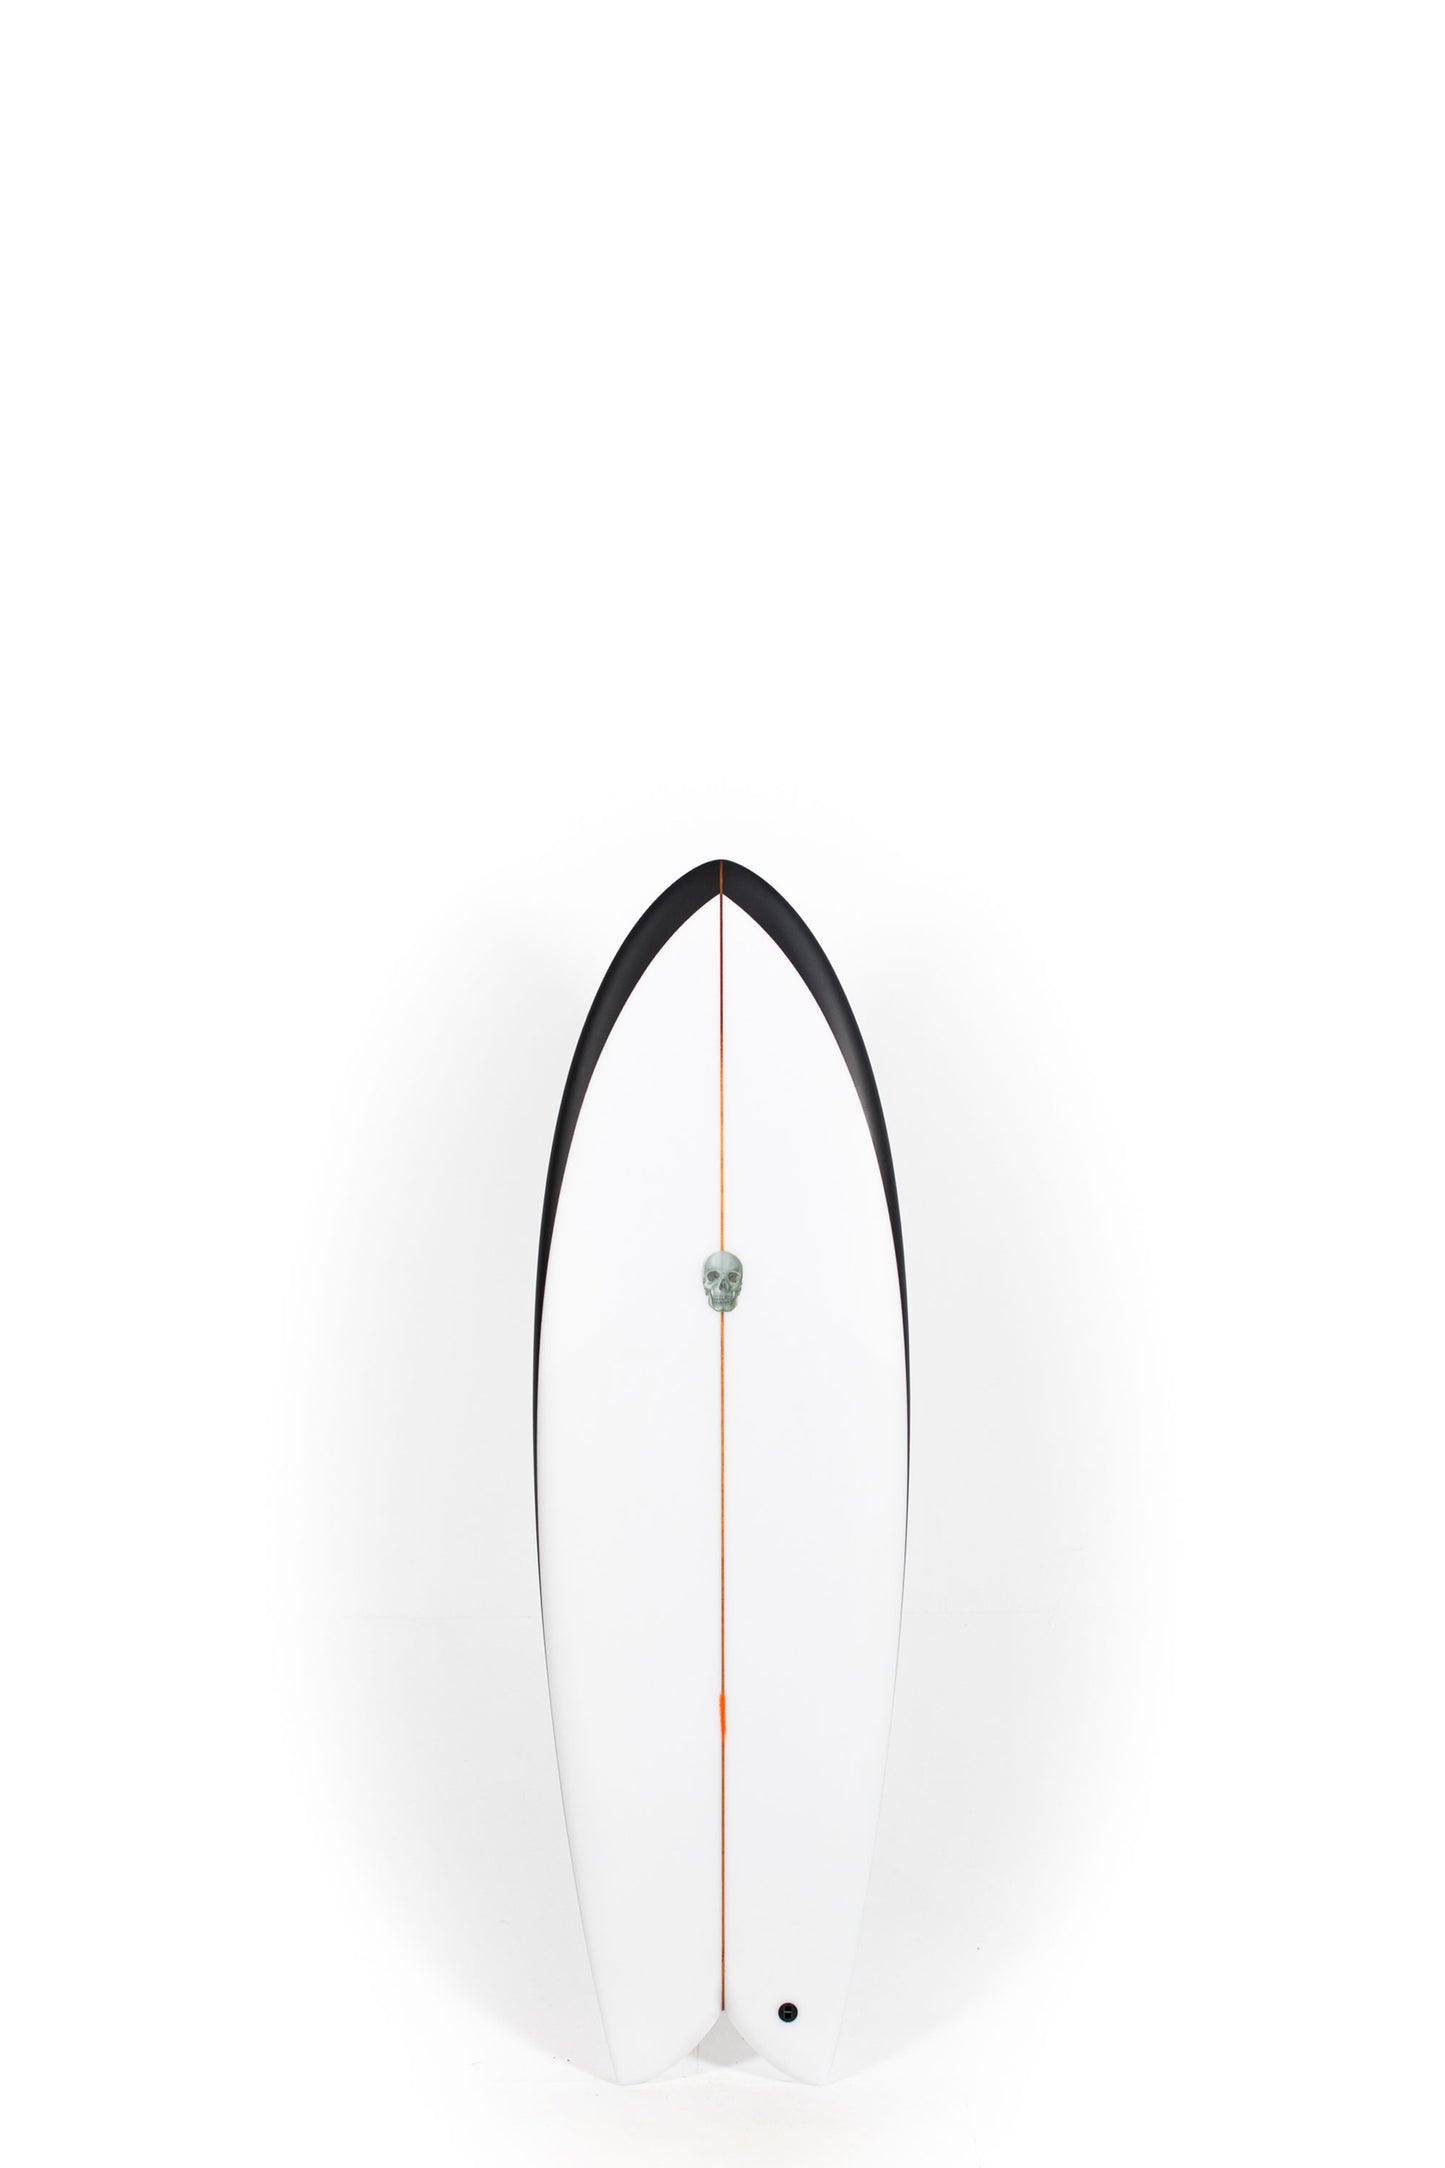 
                  
                    Pukas Surf Shop - Christenson Surfboards - MYCONAUT - 5'7" x 20 3/4 x 2 1/2 - CX04350
                  
                